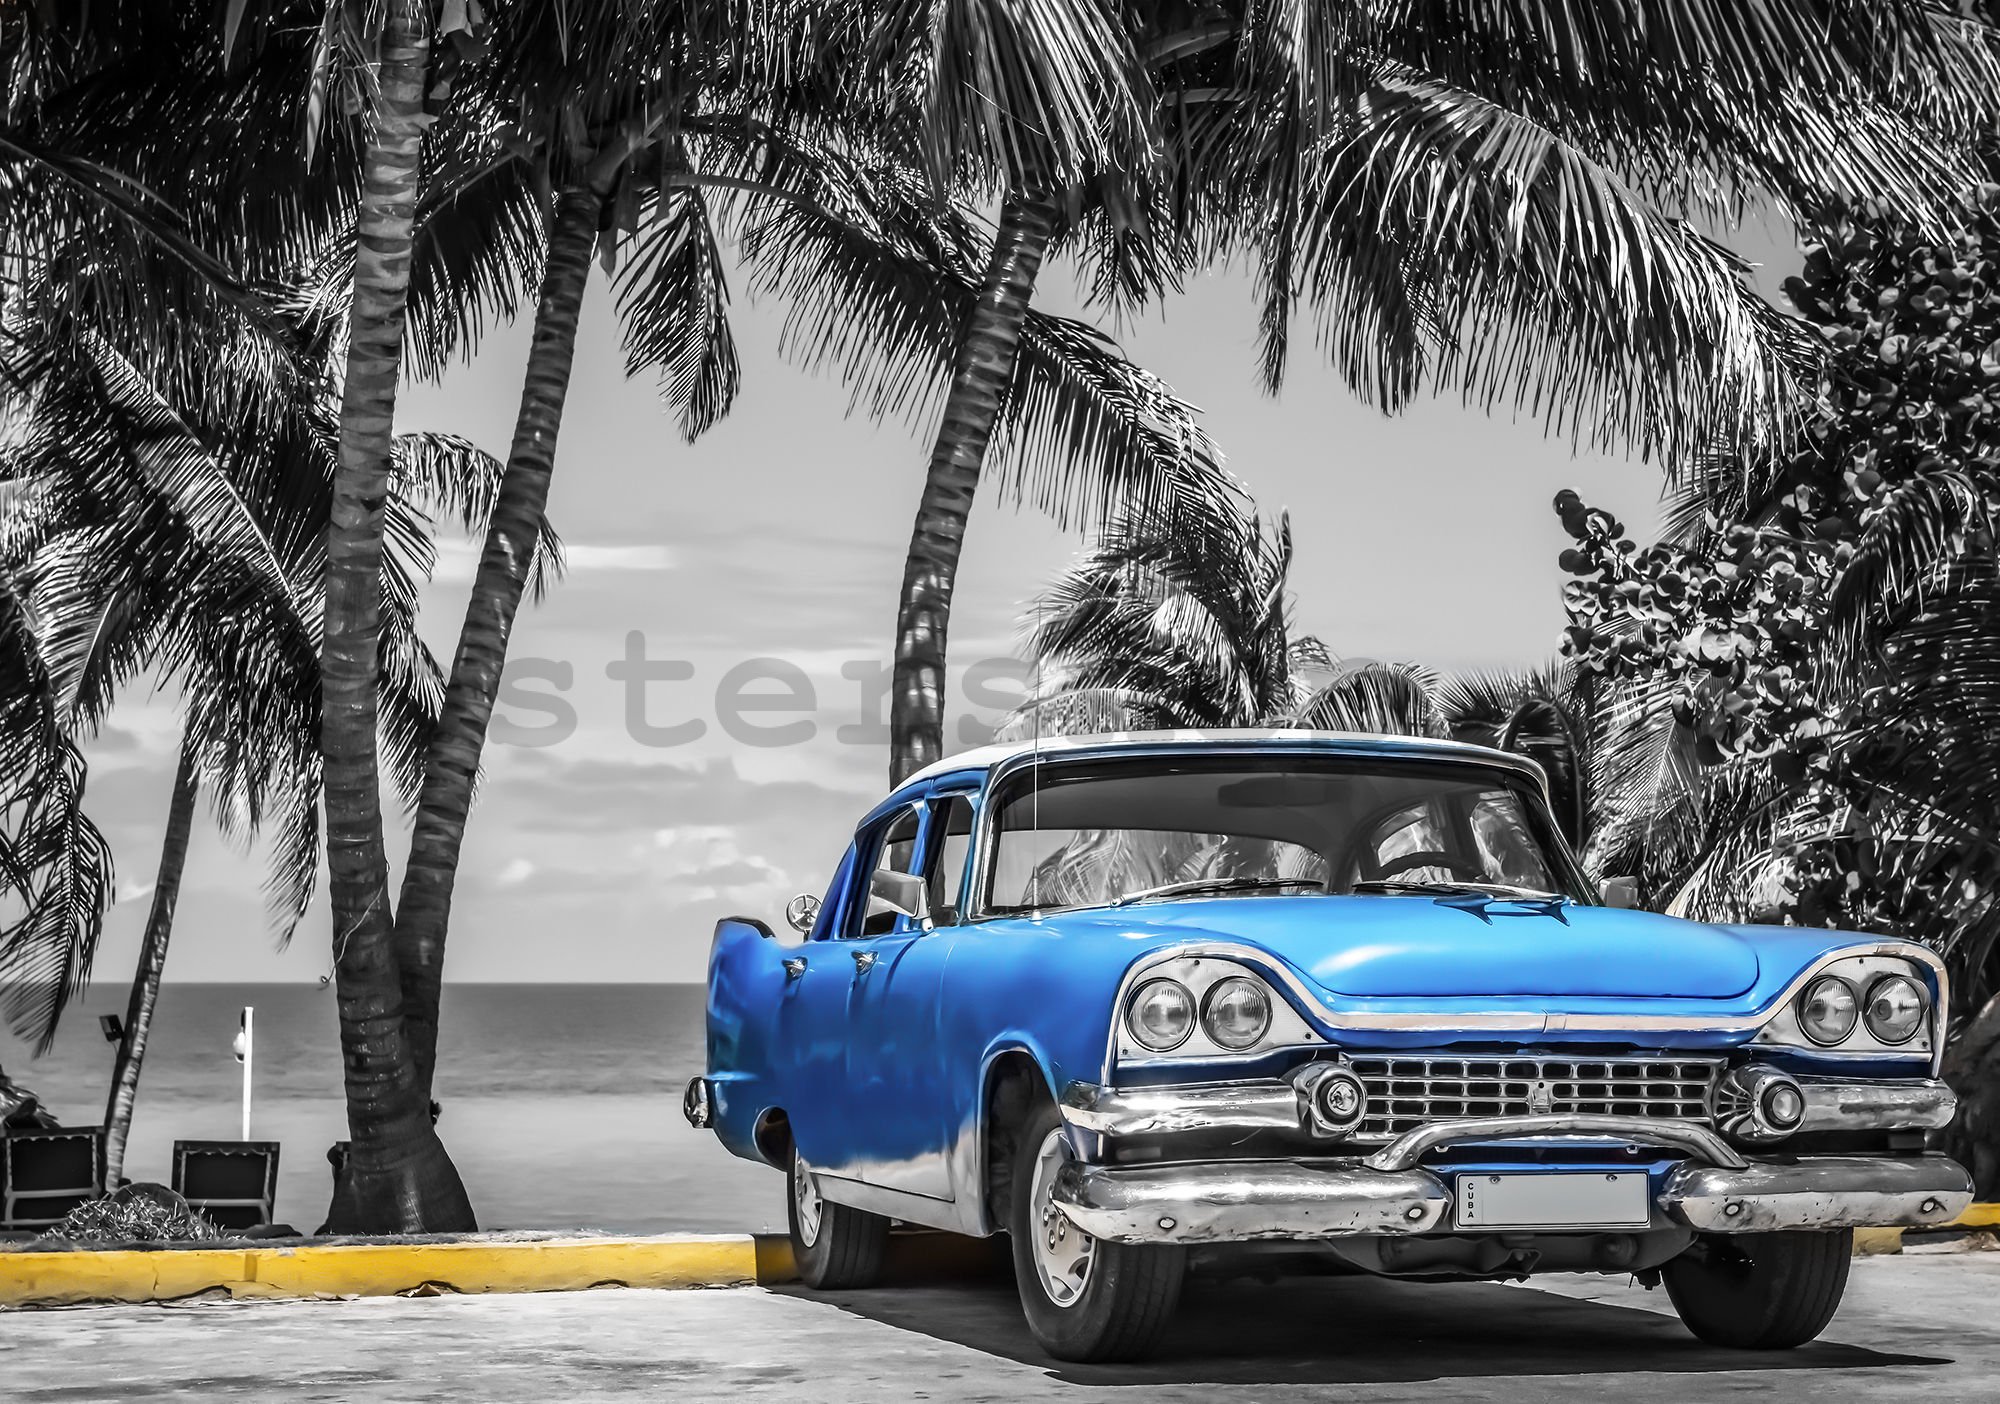 Fototapeta vliesová: Kuba modré auto u moře - 254x368 cm